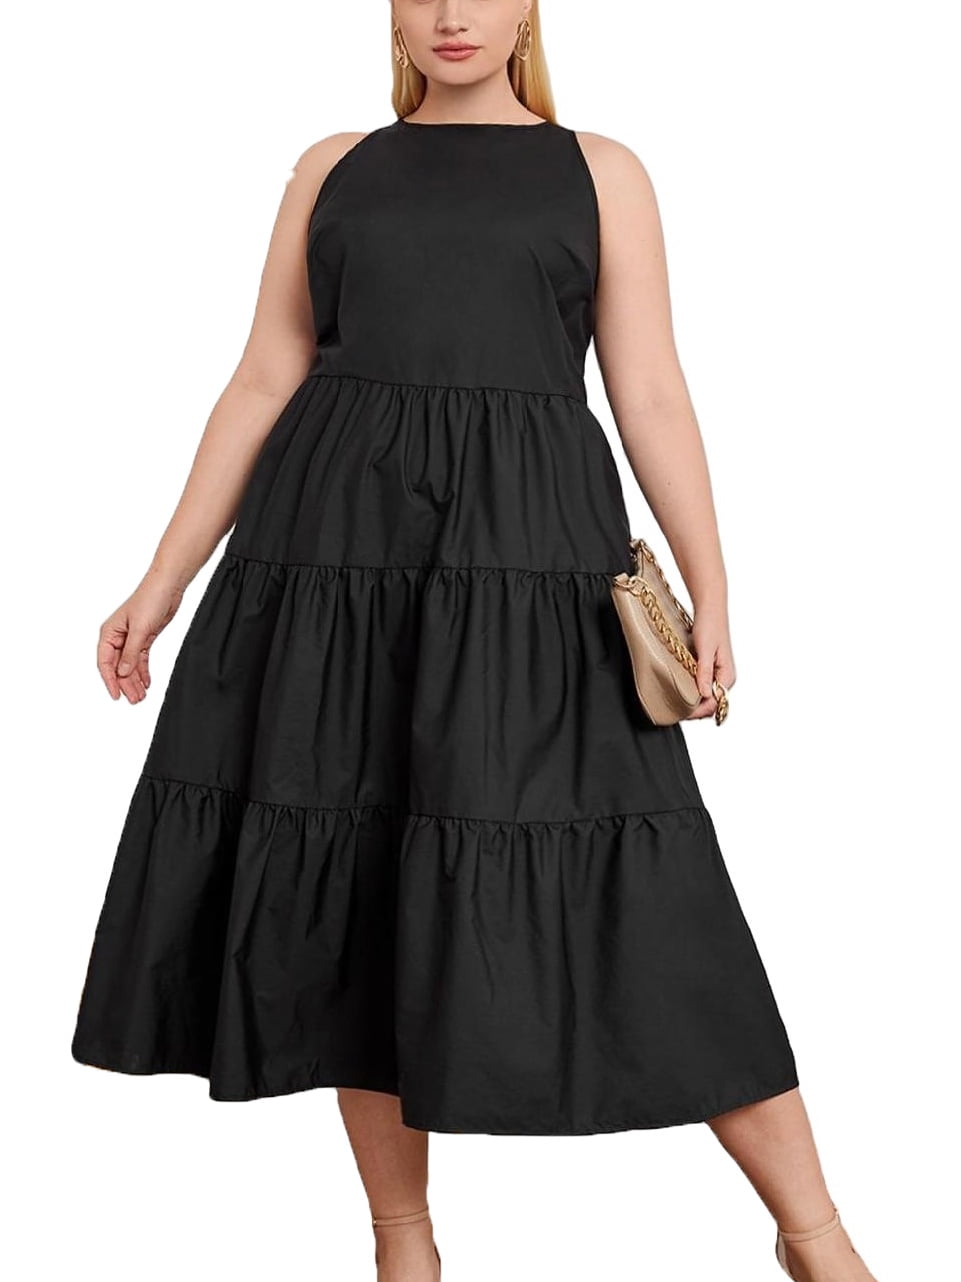 Hound efterspørgsel Sanktion Elegant Round Neck Smock Dress Sleeveless Black Plus Size Dresses (Women's)  - Walmart.com